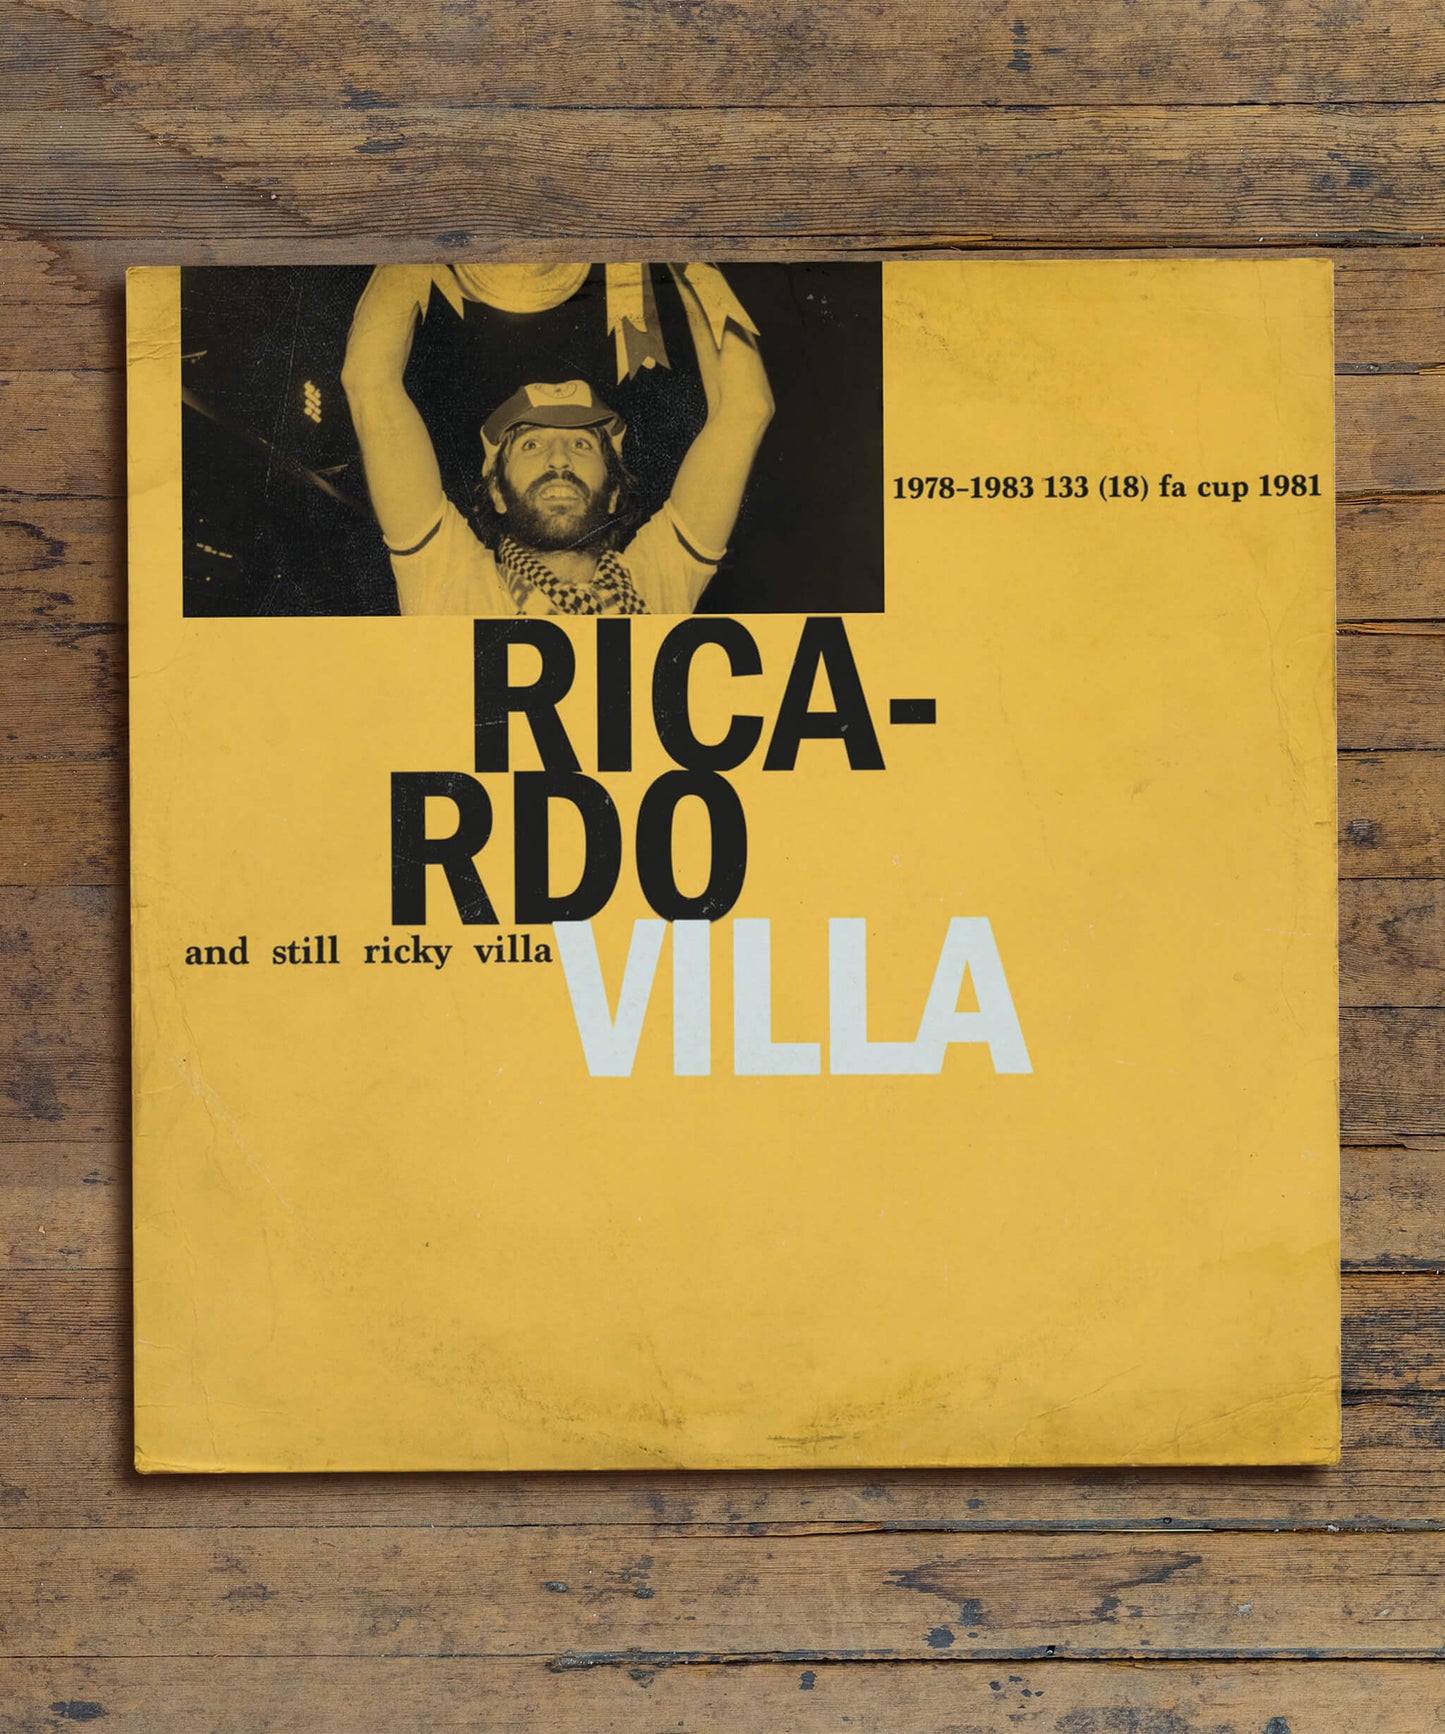 RICARDO VILLA - LP Print